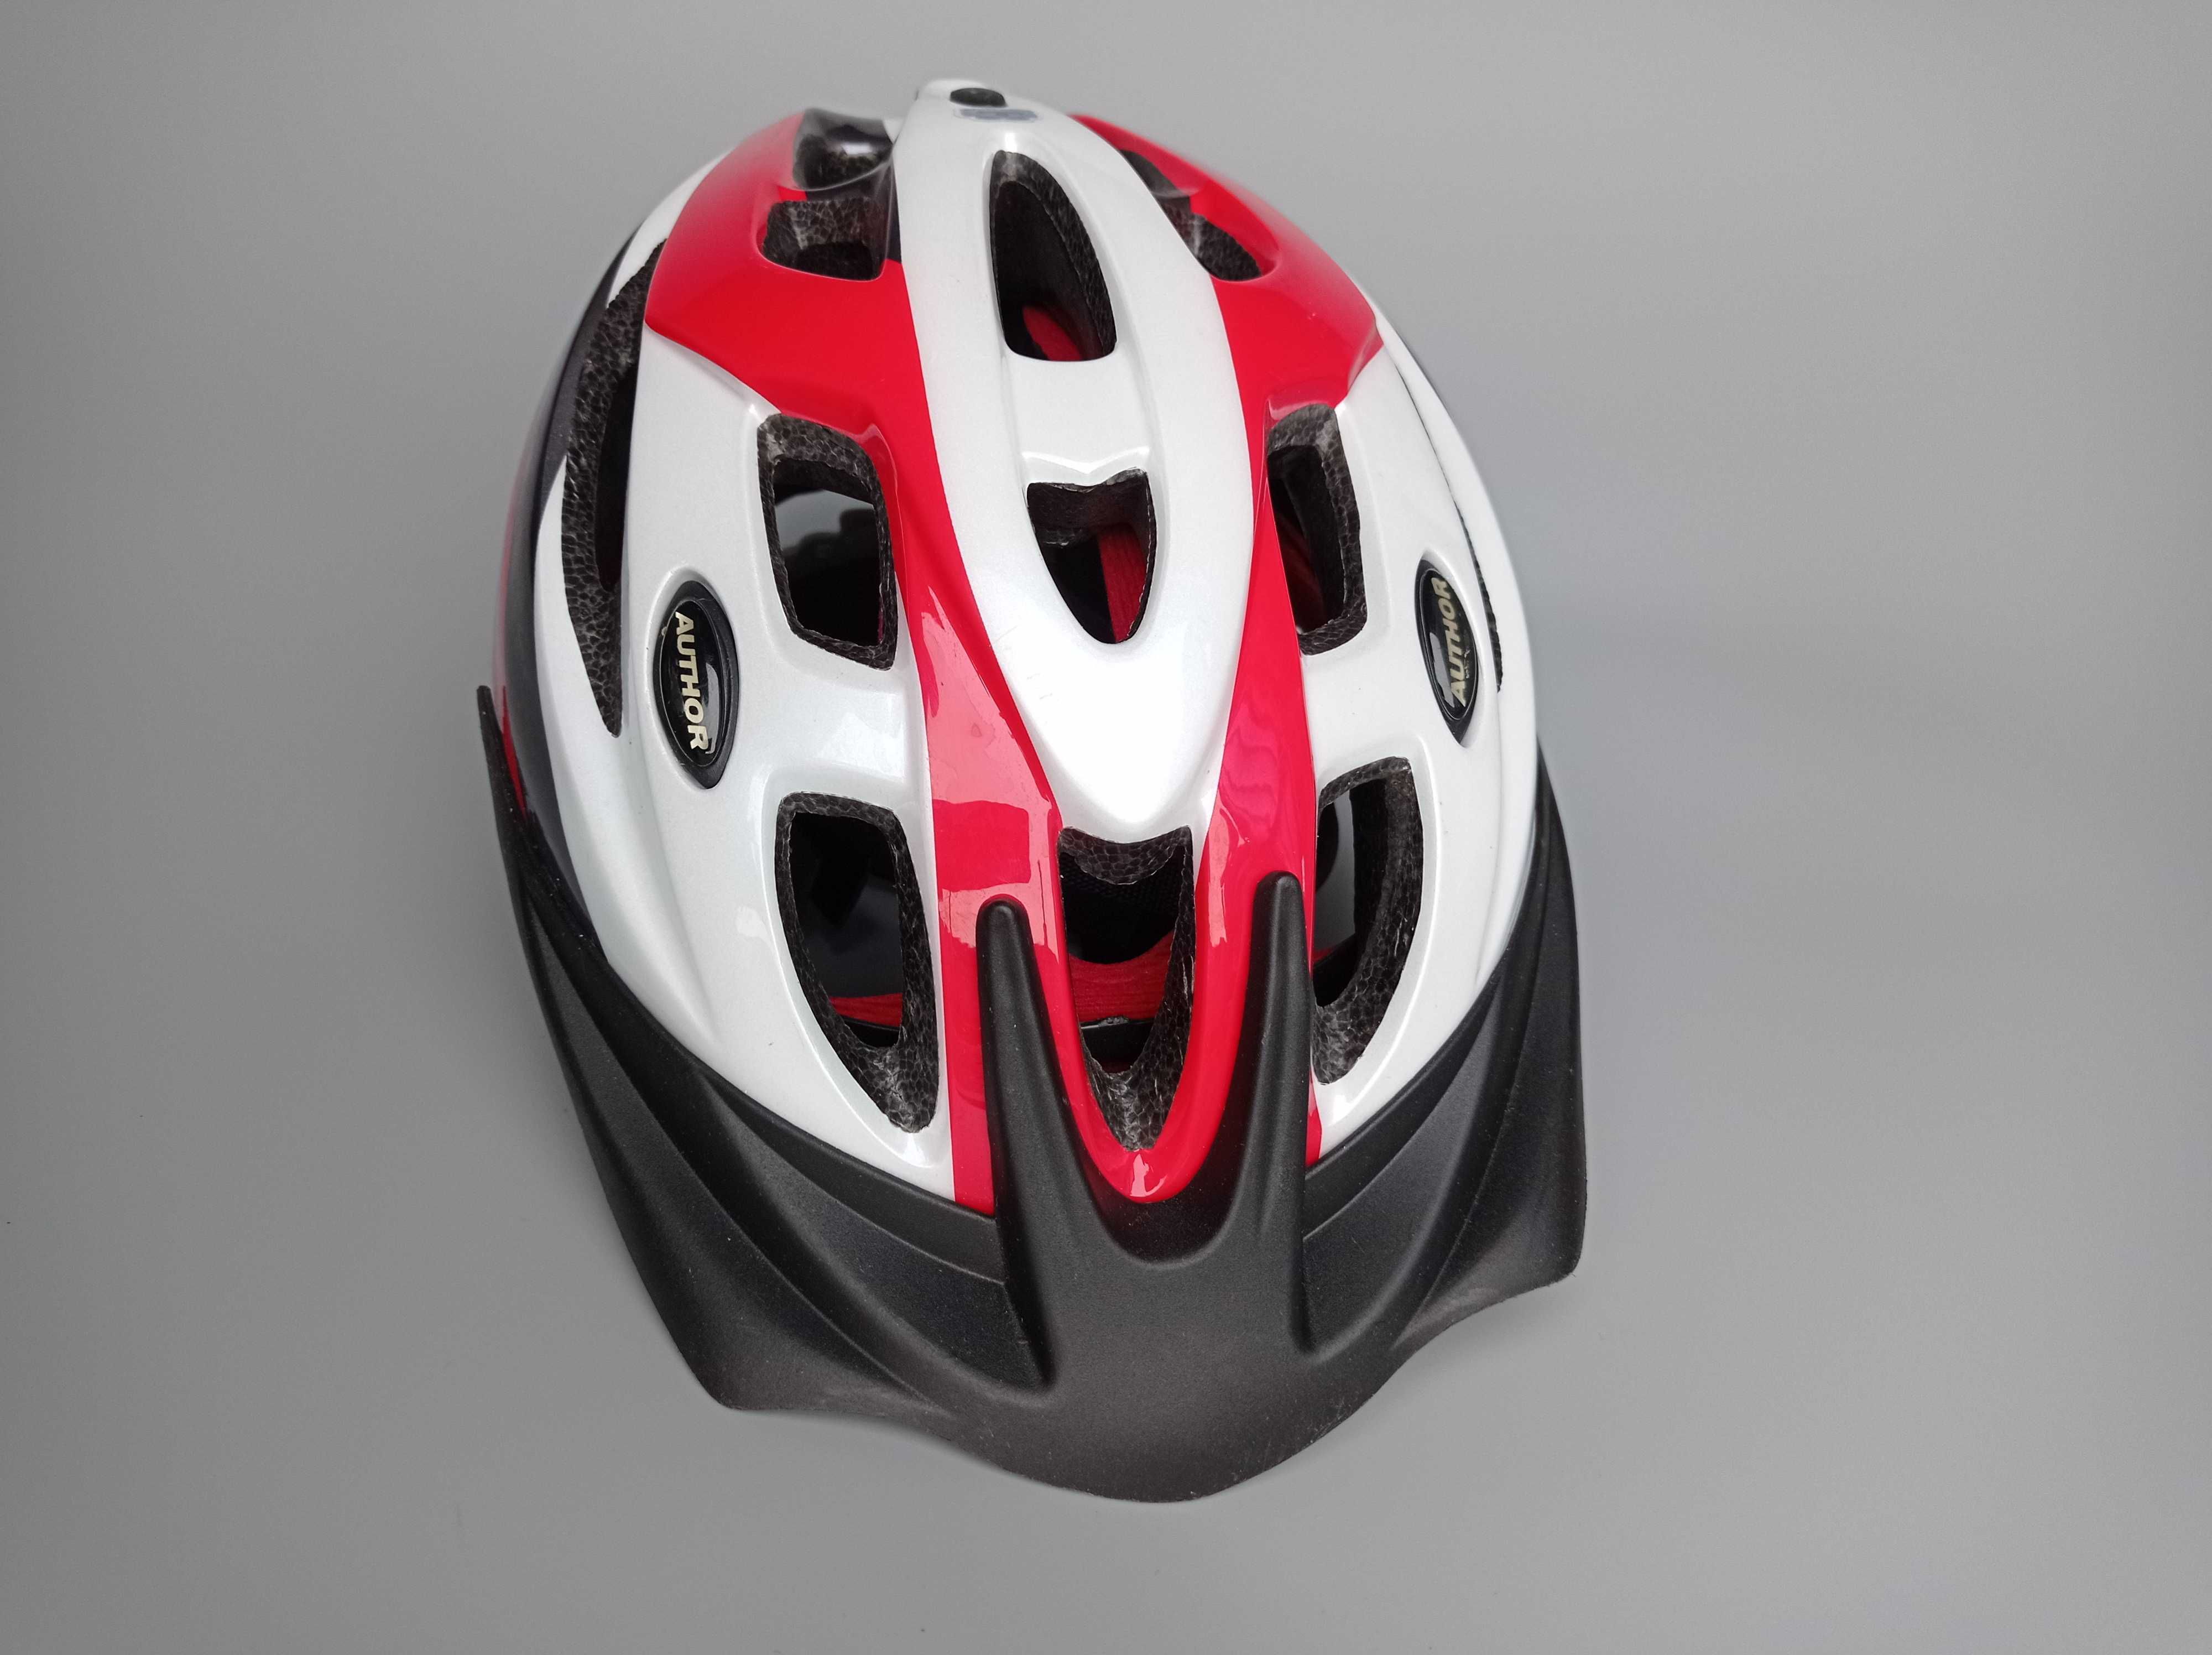 Шлем защитный Author Pulse, размер S 50-56см, велосипедный, Германия.